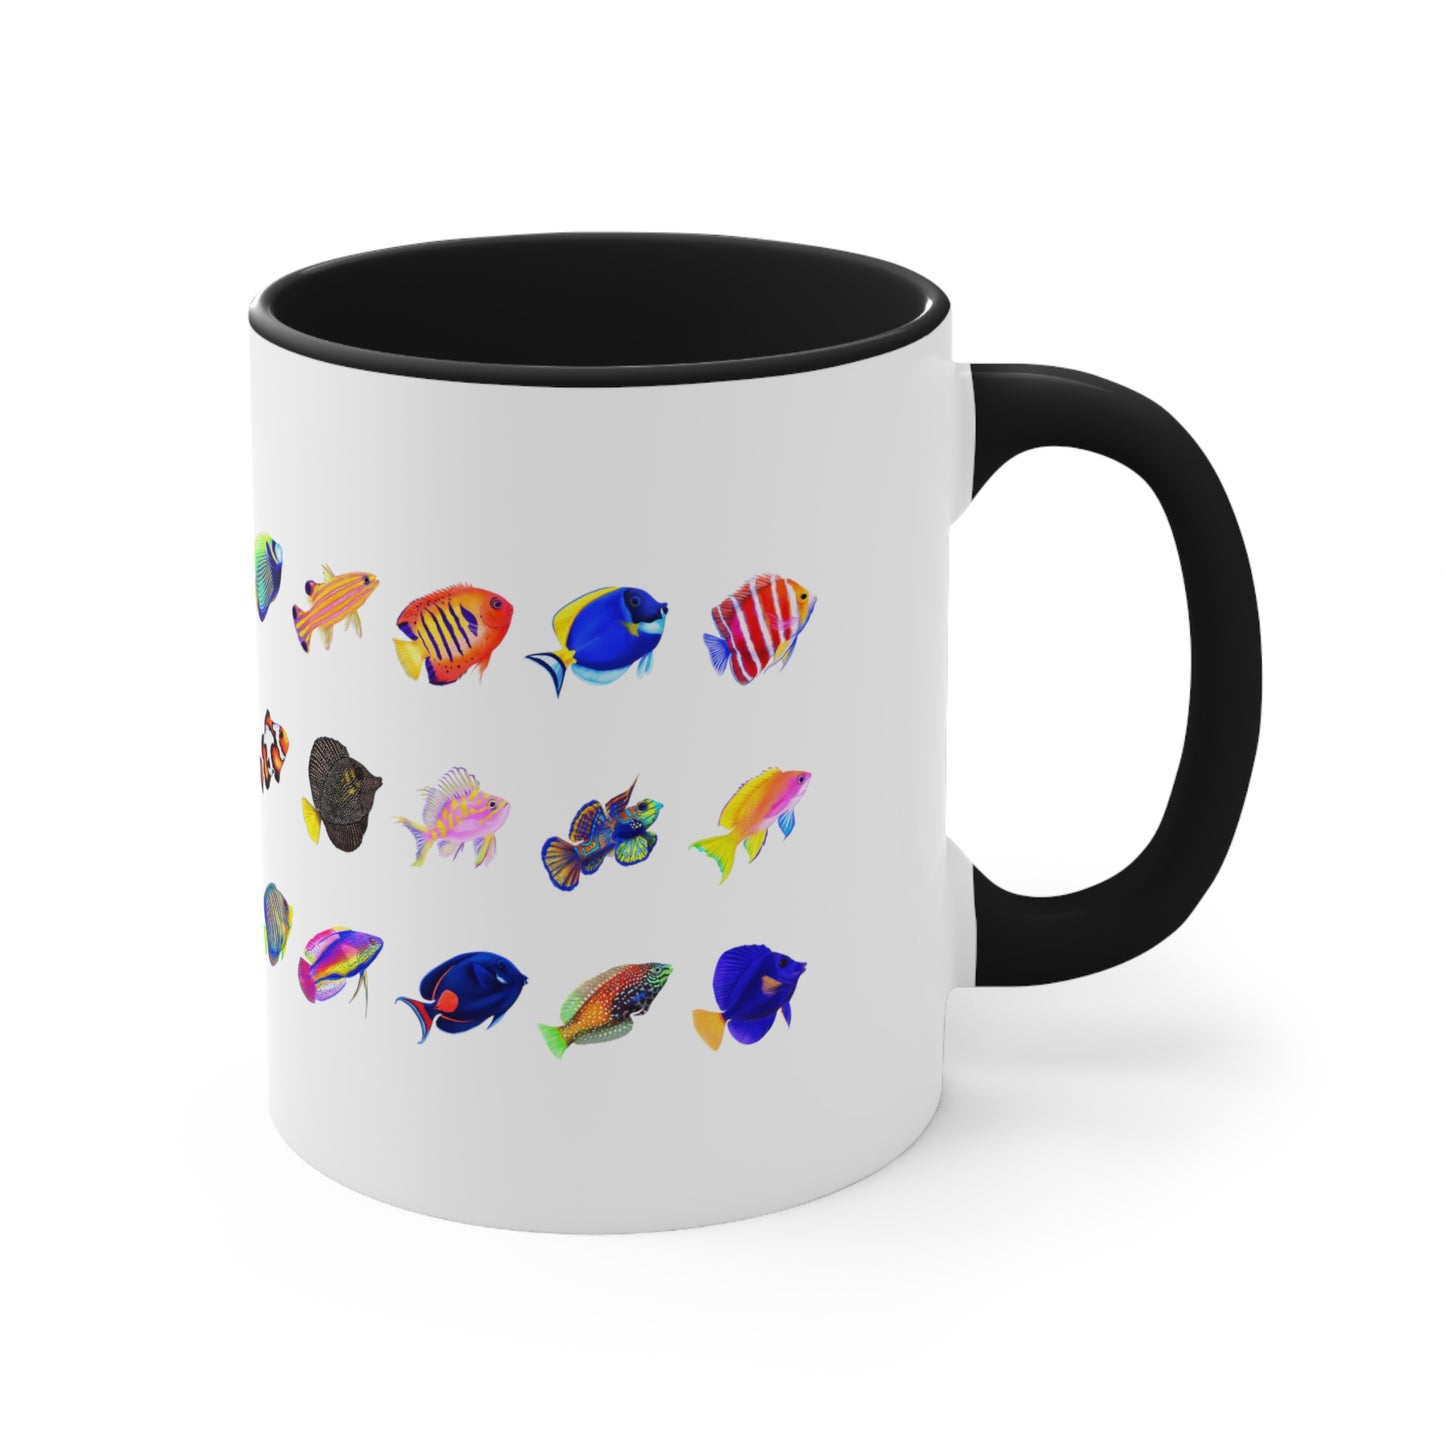 Corals & Fish Festival Mug Cup